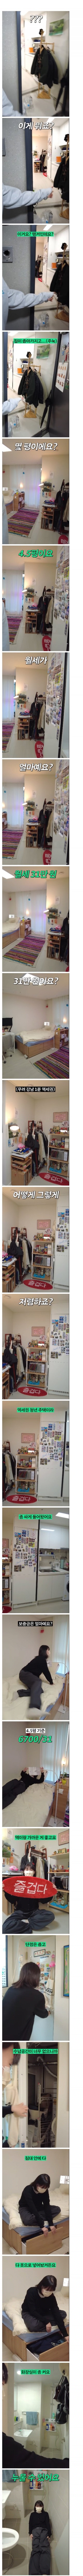 강남 1분 역세권 월세 31만원인 집.jpg